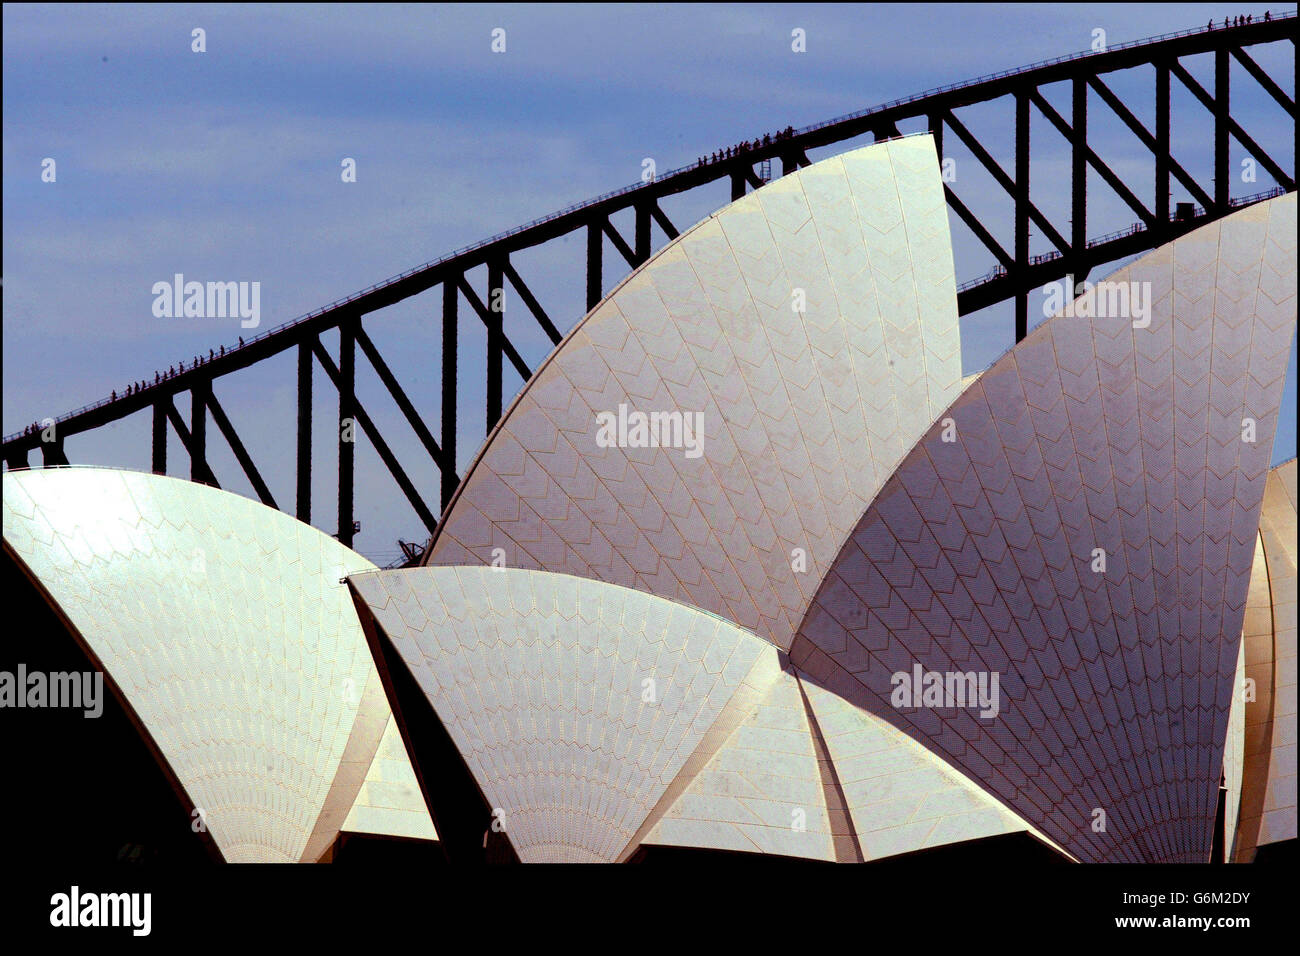 Les touristes qui grimpent sur le pont du port de Sydney ressemblent à des fourmis lorsqu'ils passent les voiles de l'Opéra de Sydney. Banque D'Images